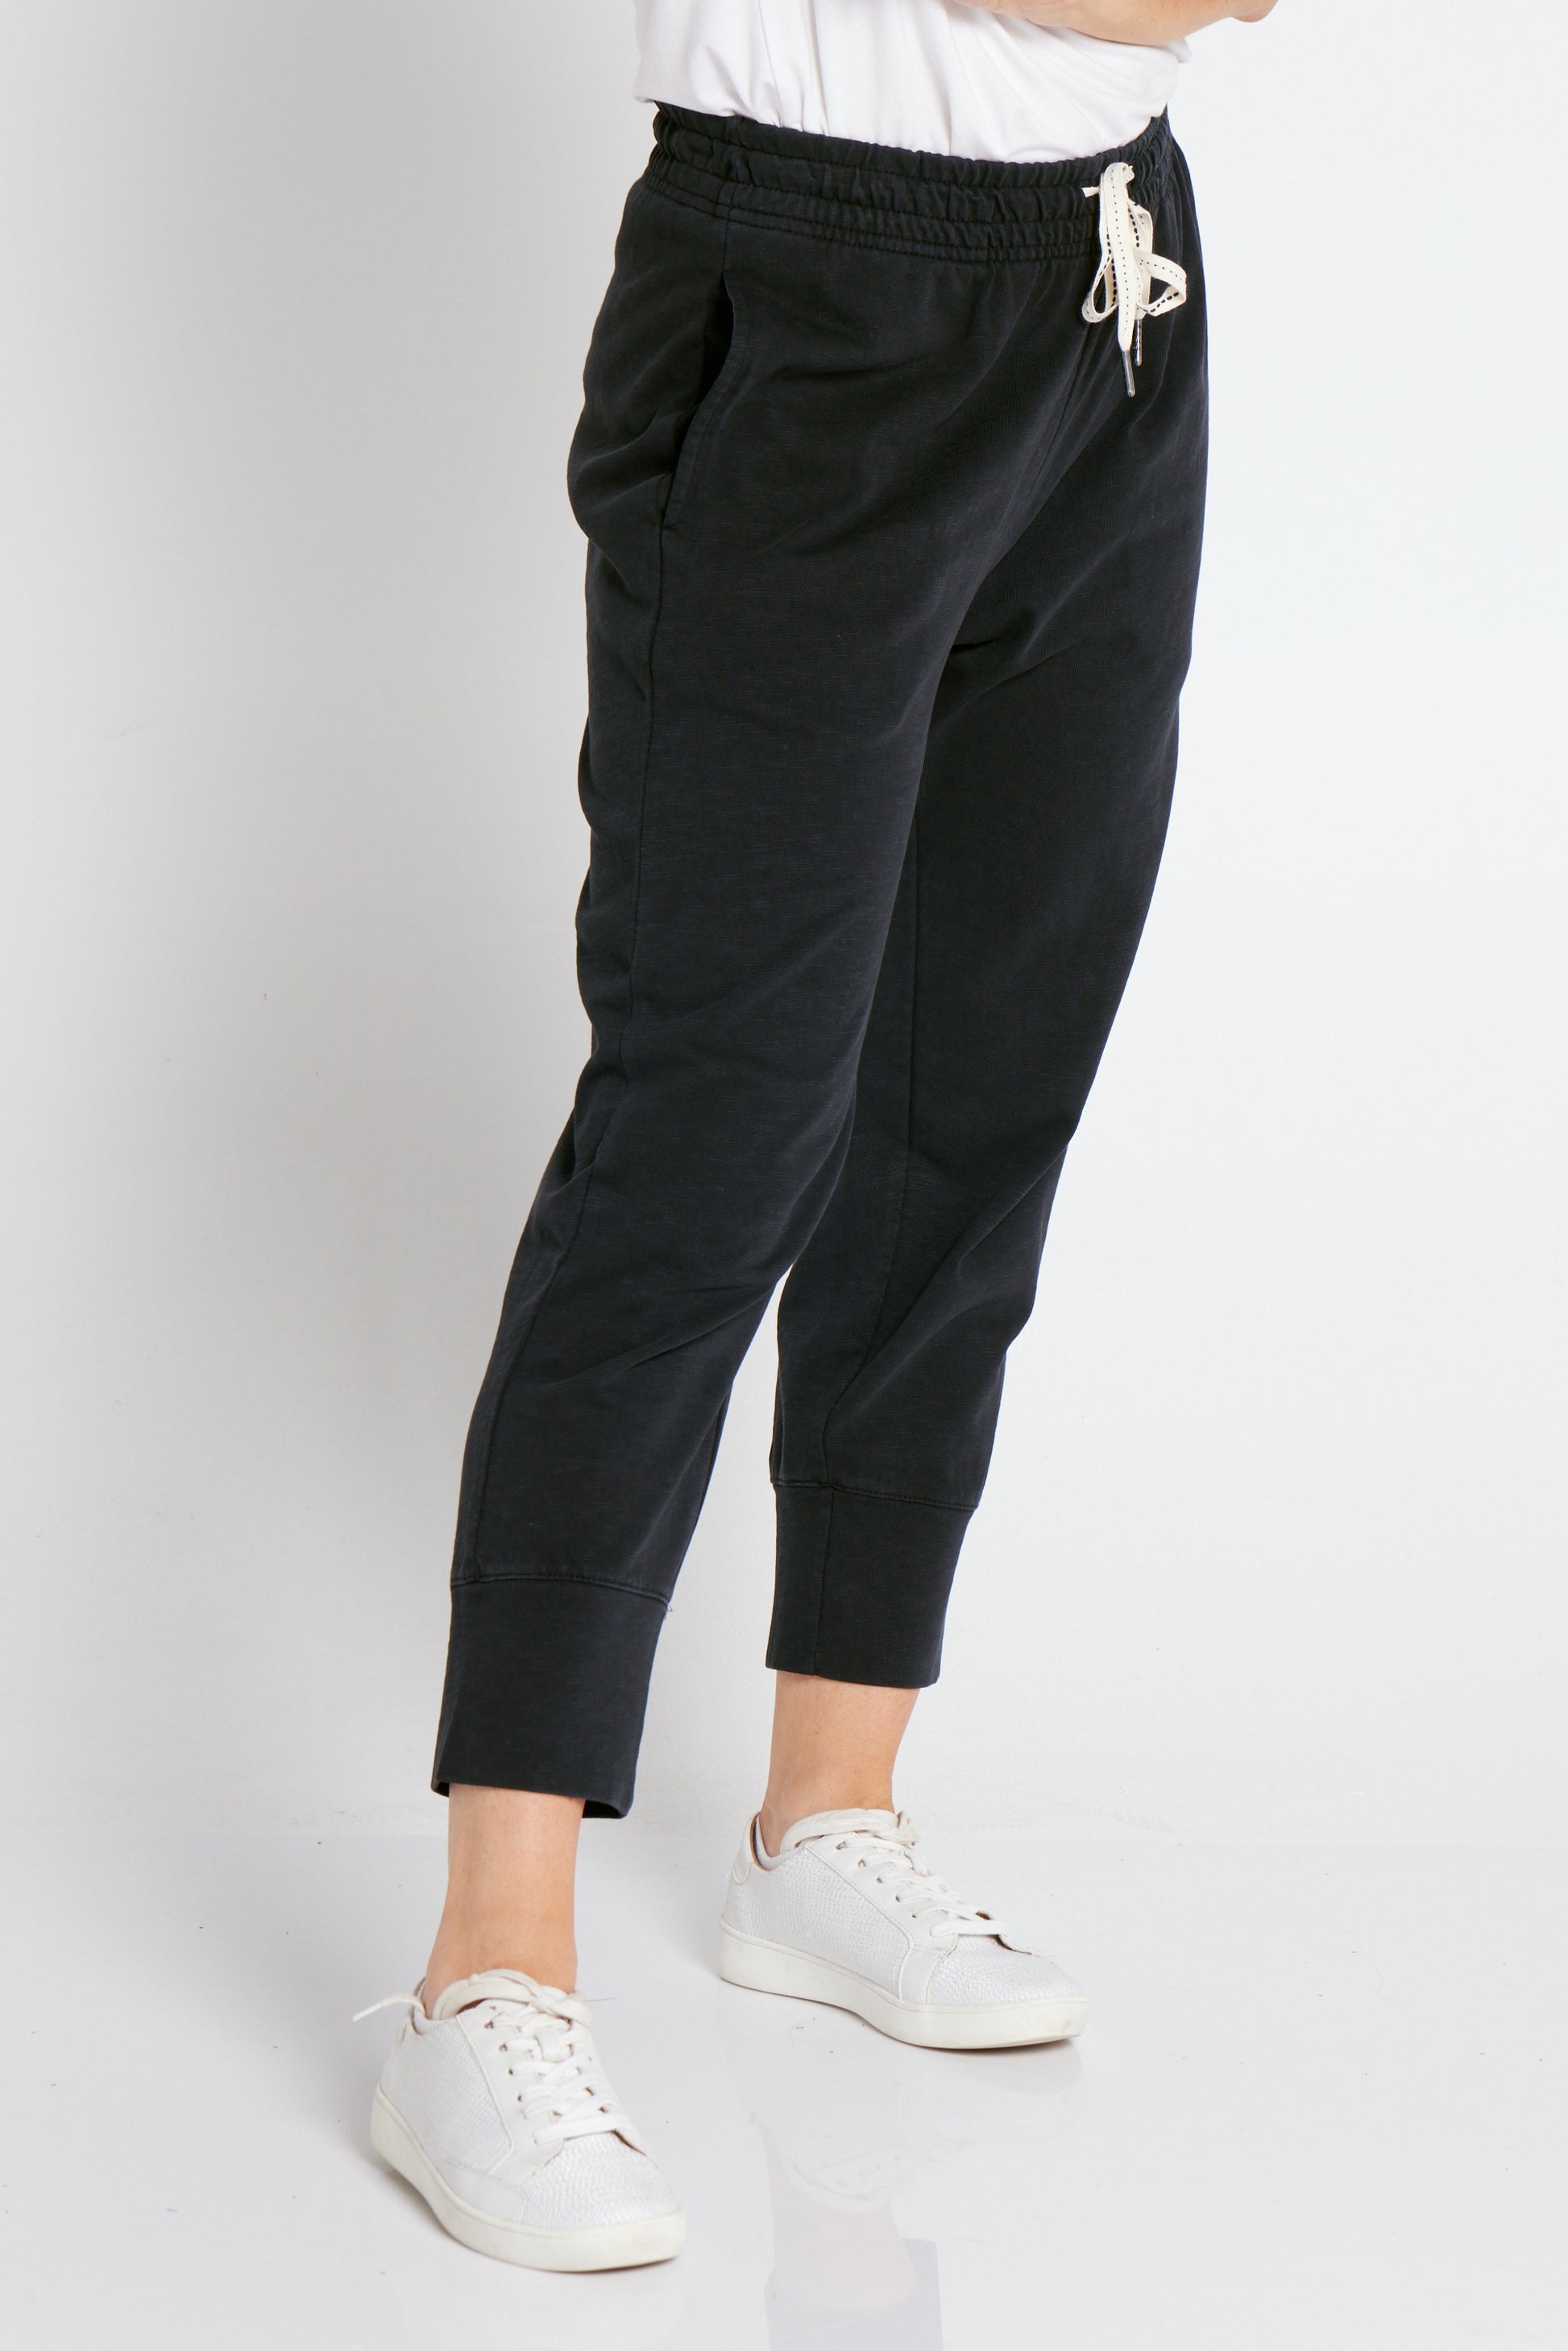 TULIO for Mature Fashion, Brunch Pants - Black